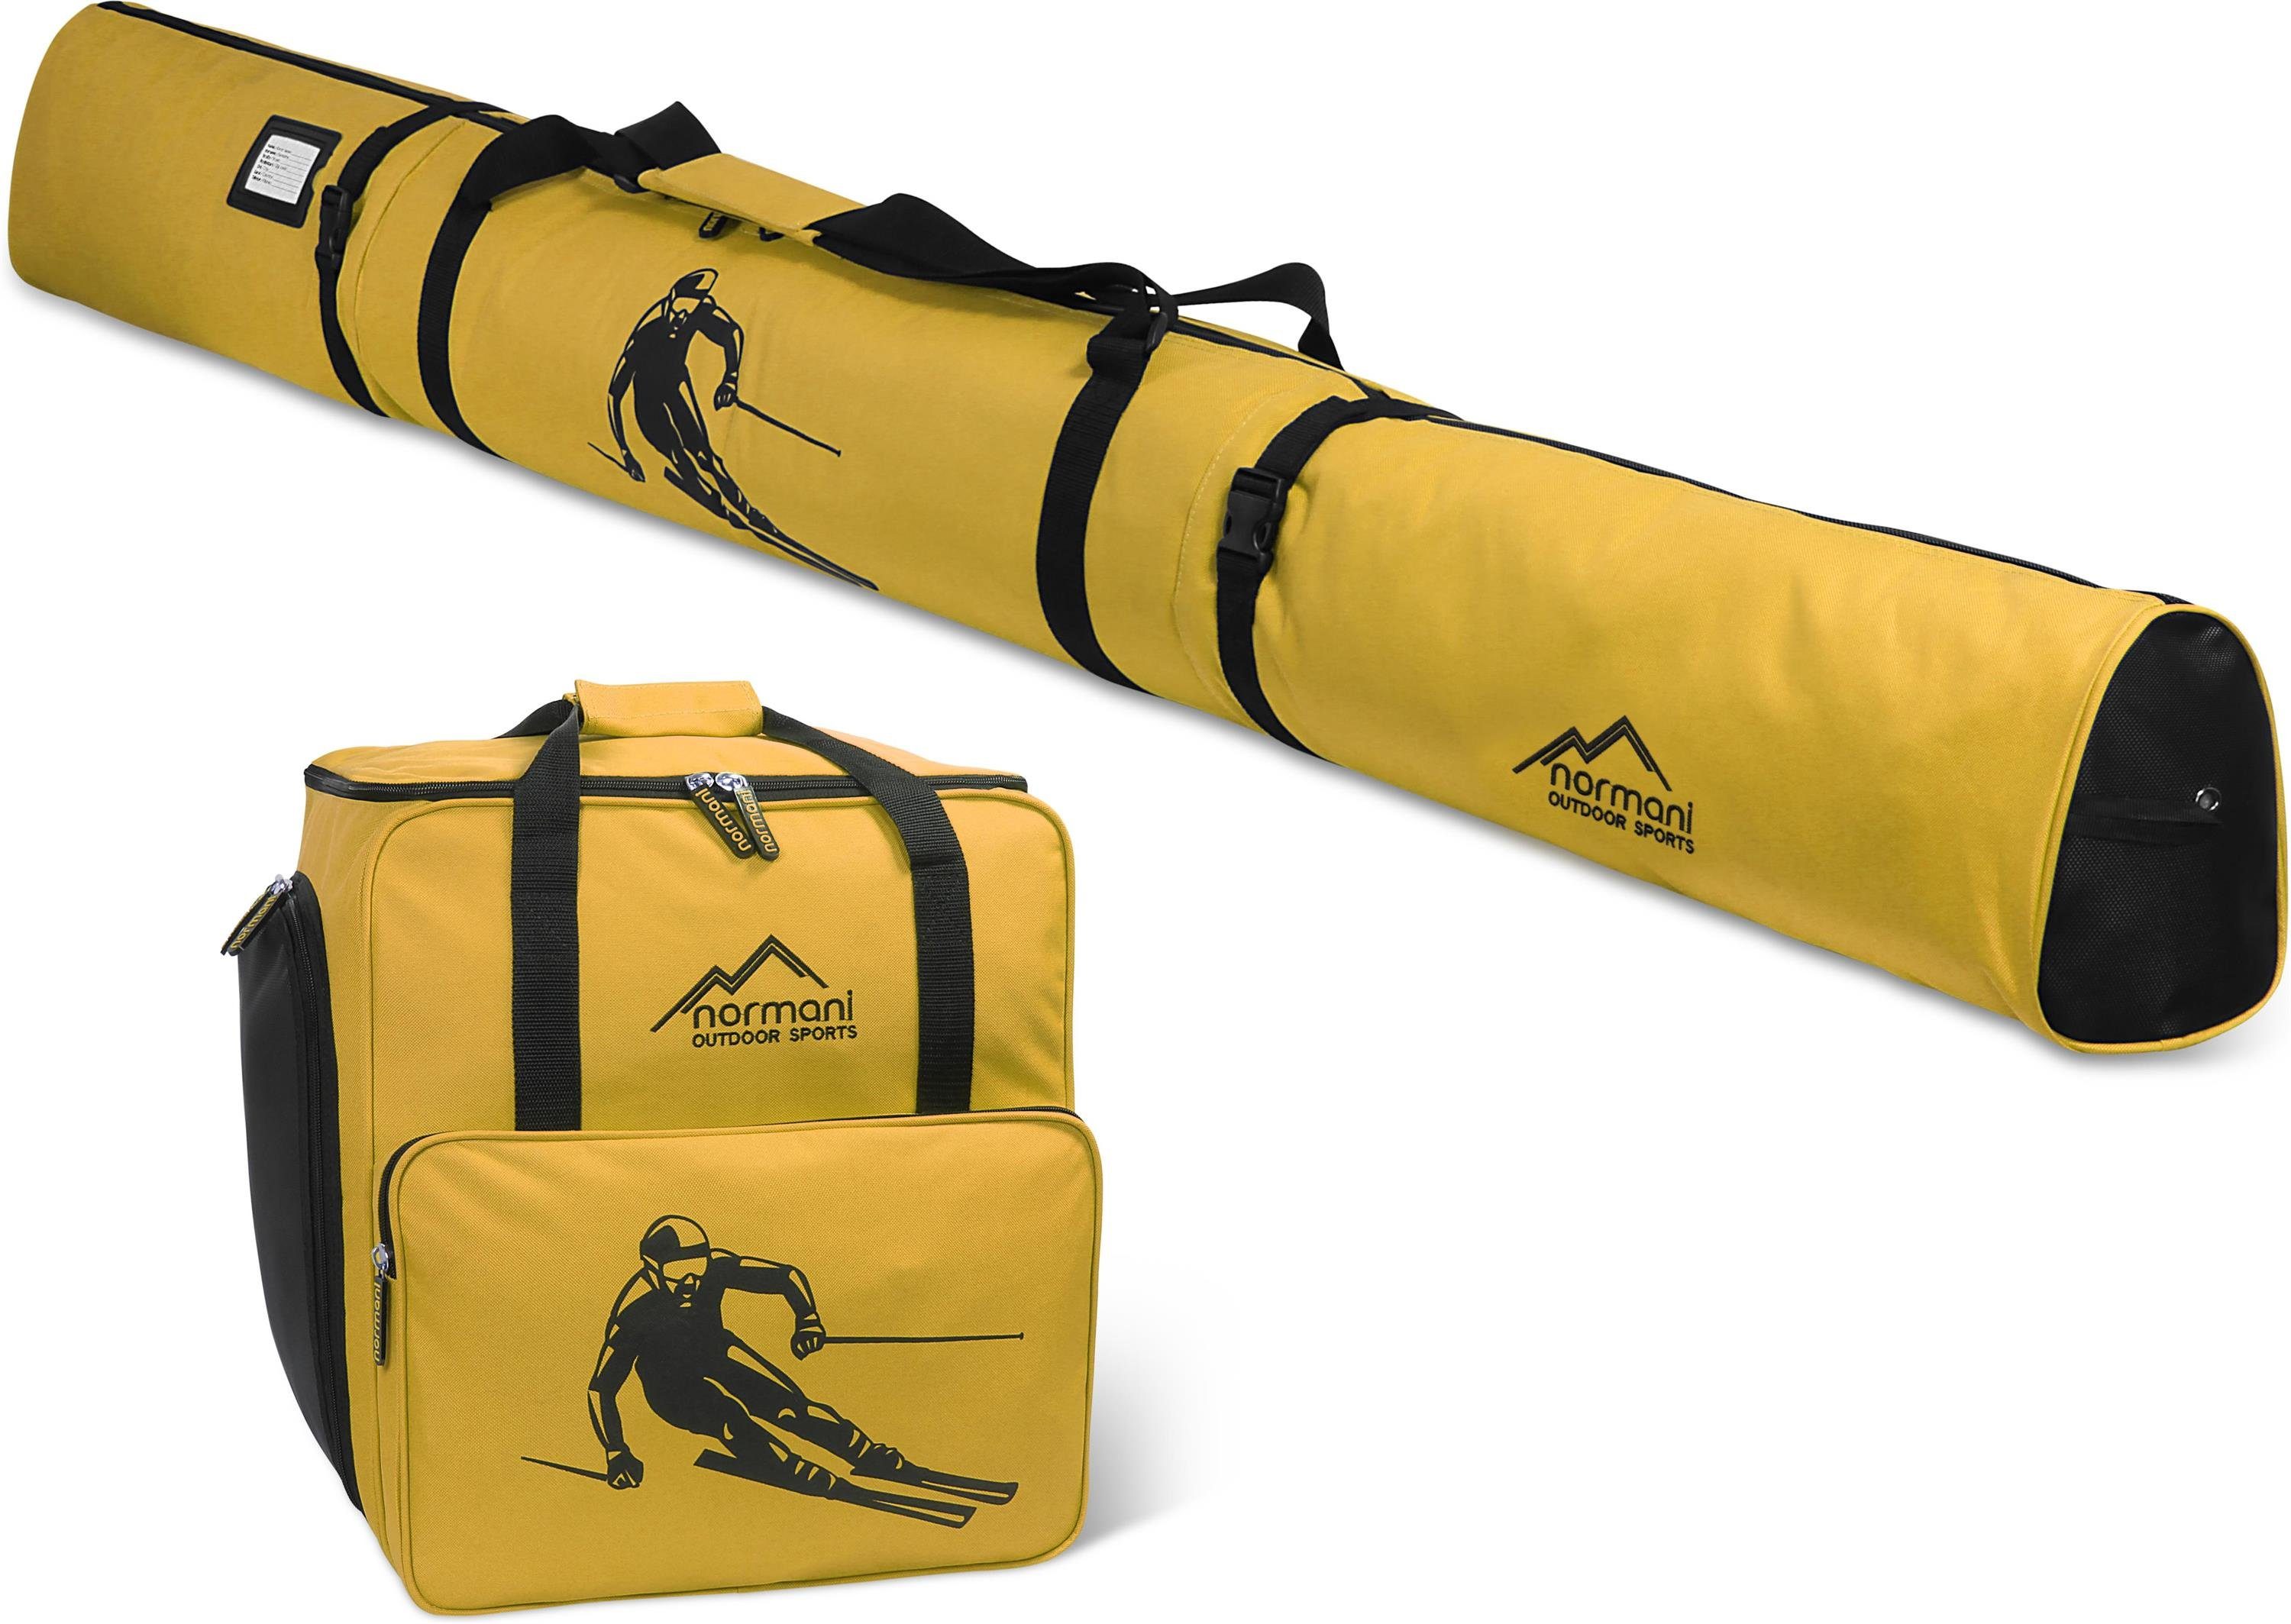 Skischuhe Paar Skischuhtasche, 1 Skisack Skitasche für und normani und Sporttasche Skitasche Gelb gepolsterte Stöcker Ski, Skiset Skibag Kombiset